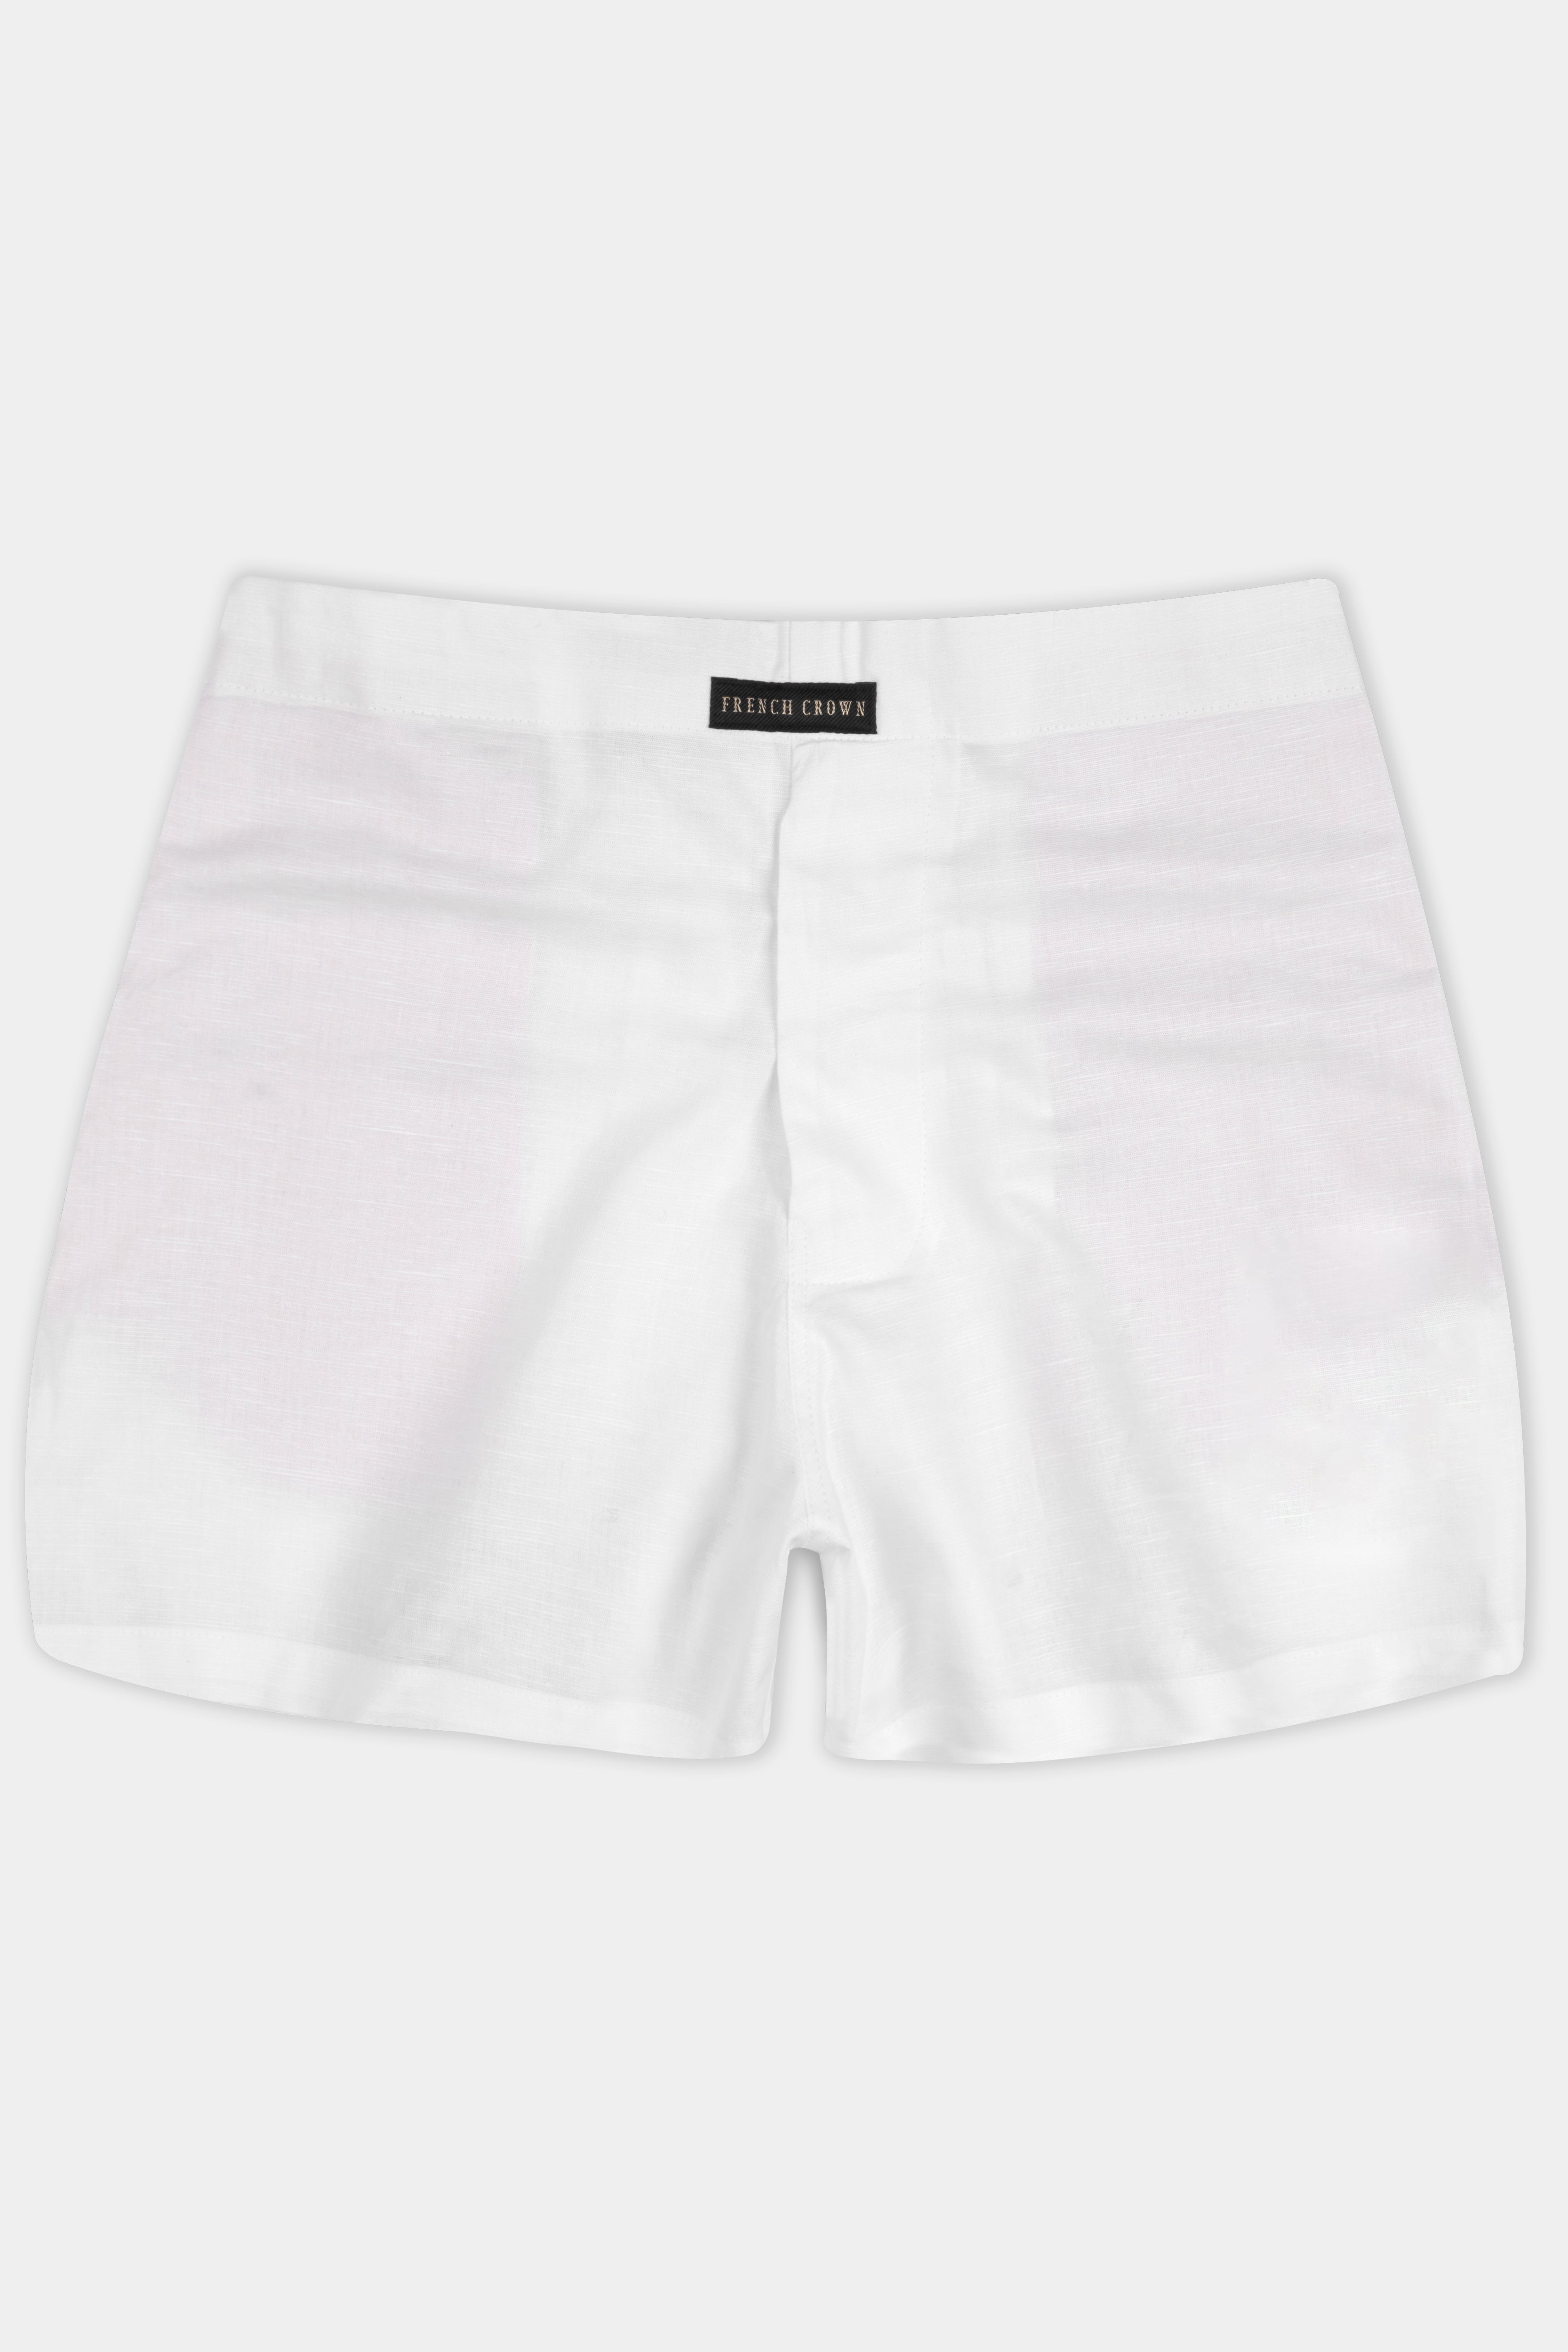 Bright White Premium Linen Boxers